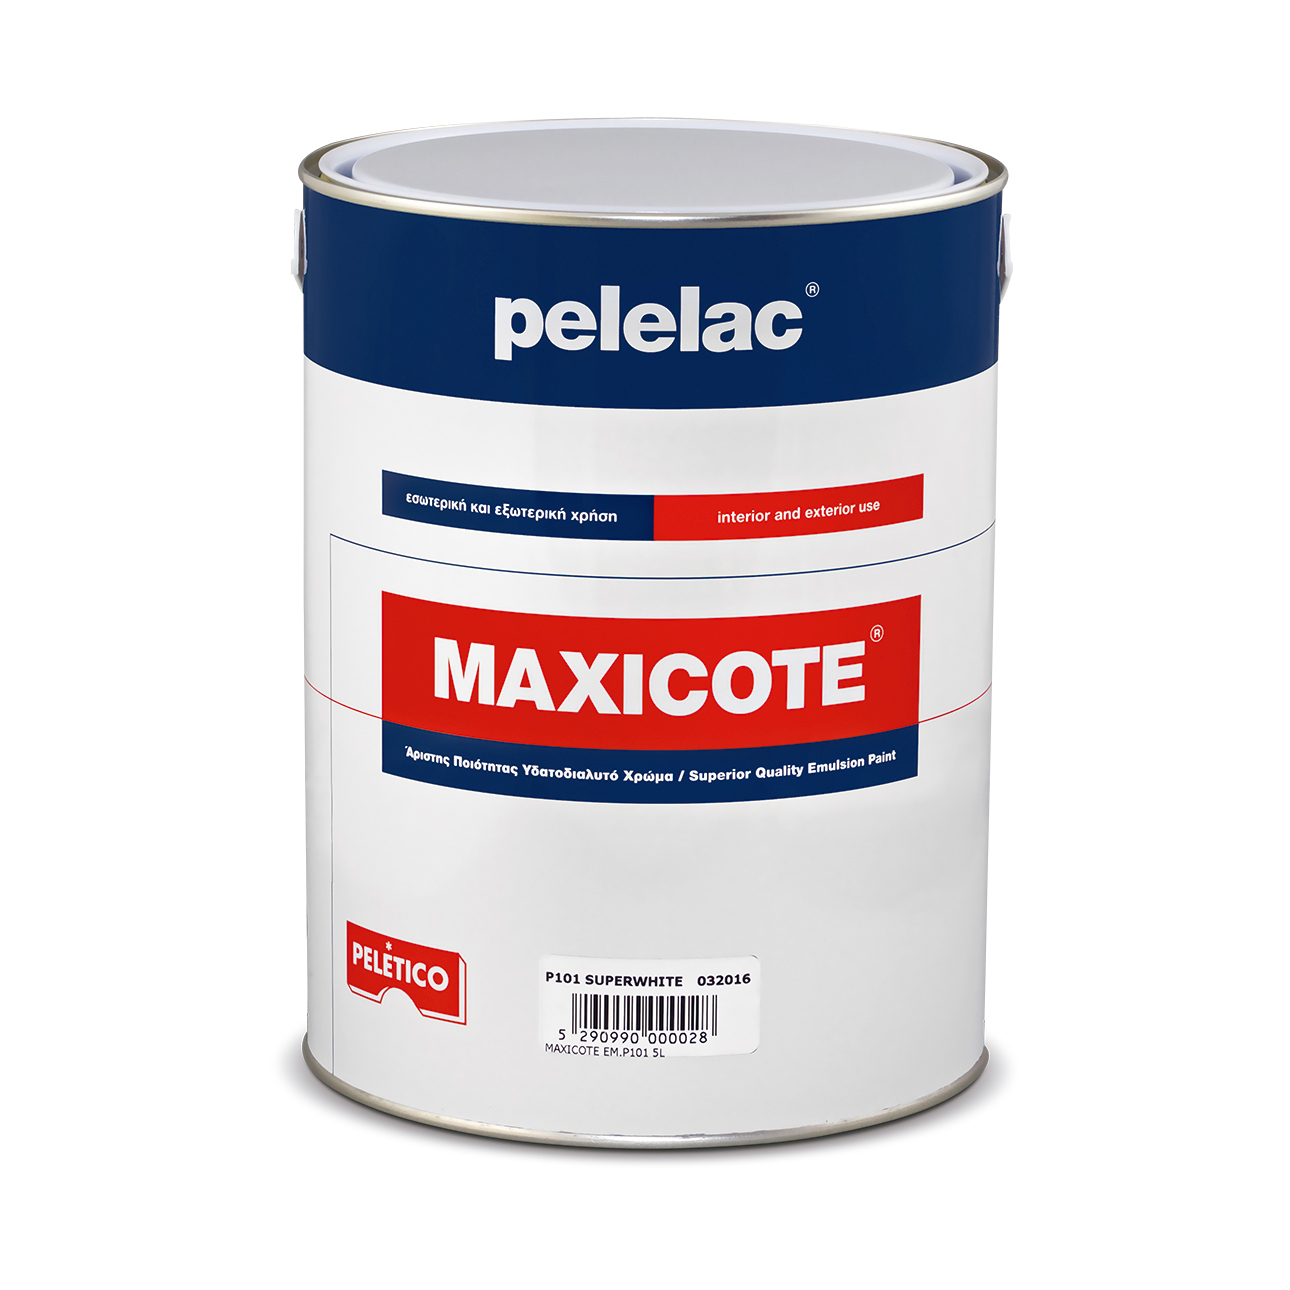 PELELAC MAXICOTE® EMULSION SILVER SATIN P111 0.75L